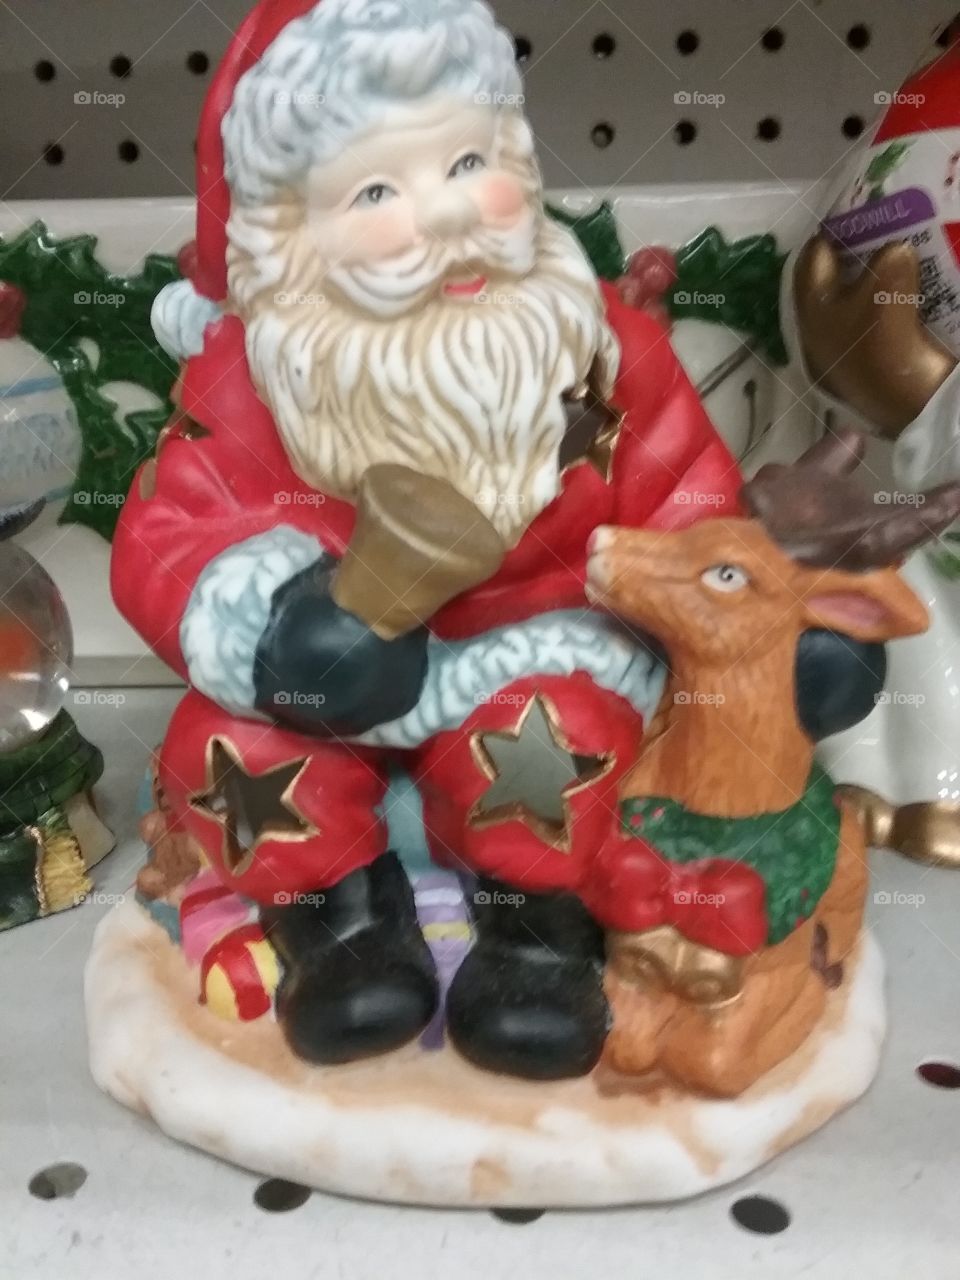 Santa Claus statue